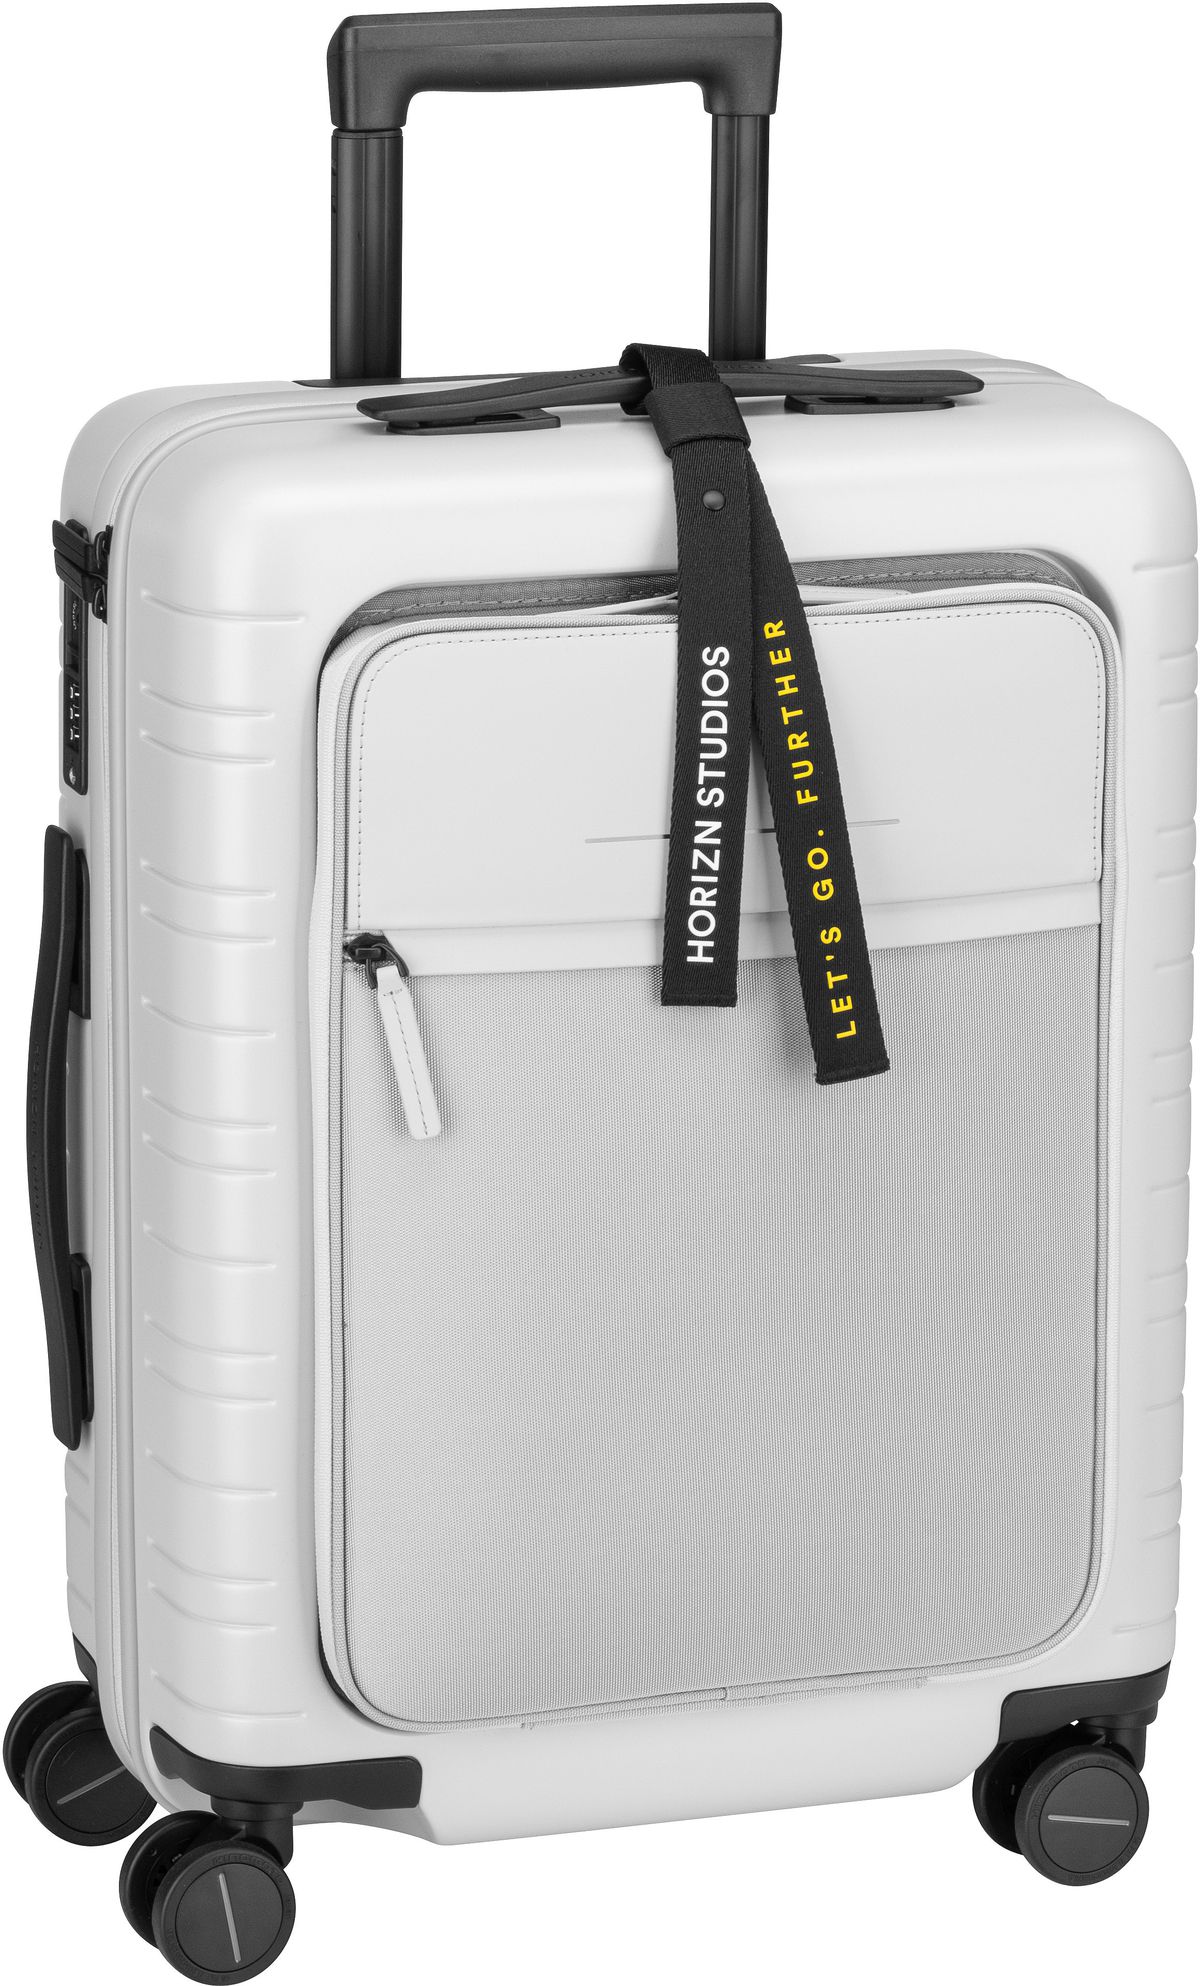 Horizn Studios M5 Essential Cabin Luggage - Light Quartz Grey